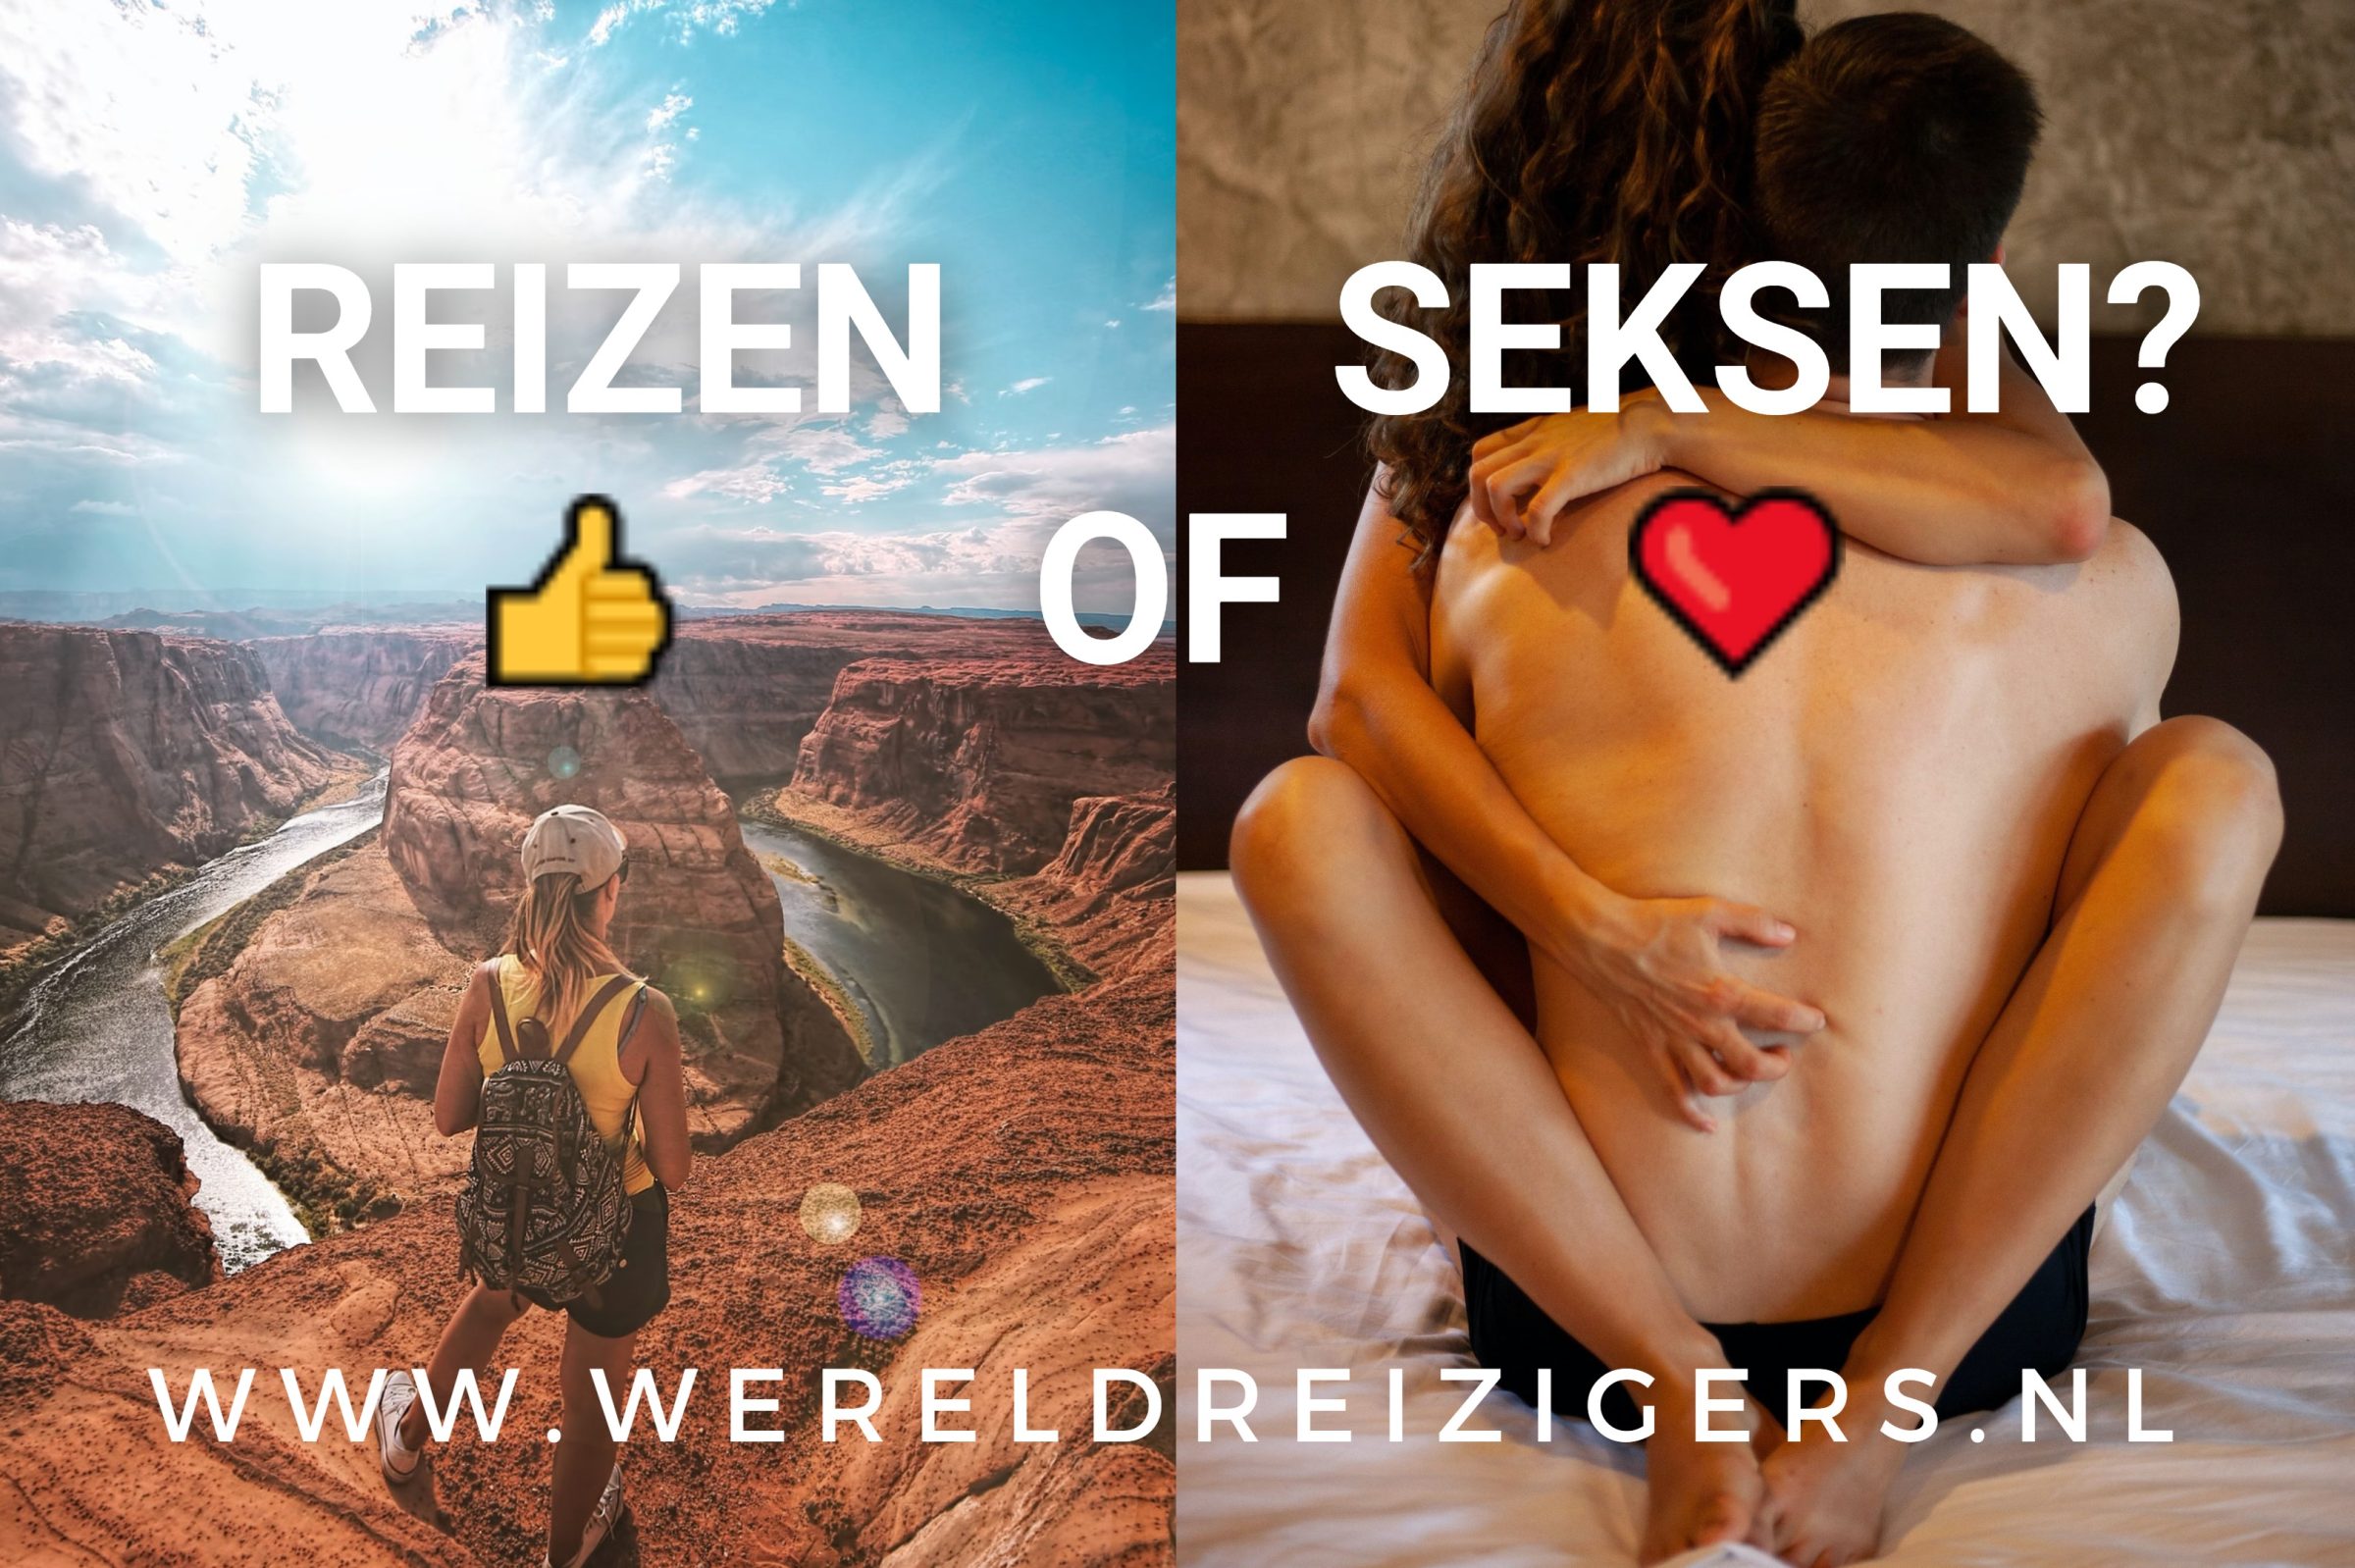 Seks of reizen? Als je zou moeten kiezen, wat kies je dan?